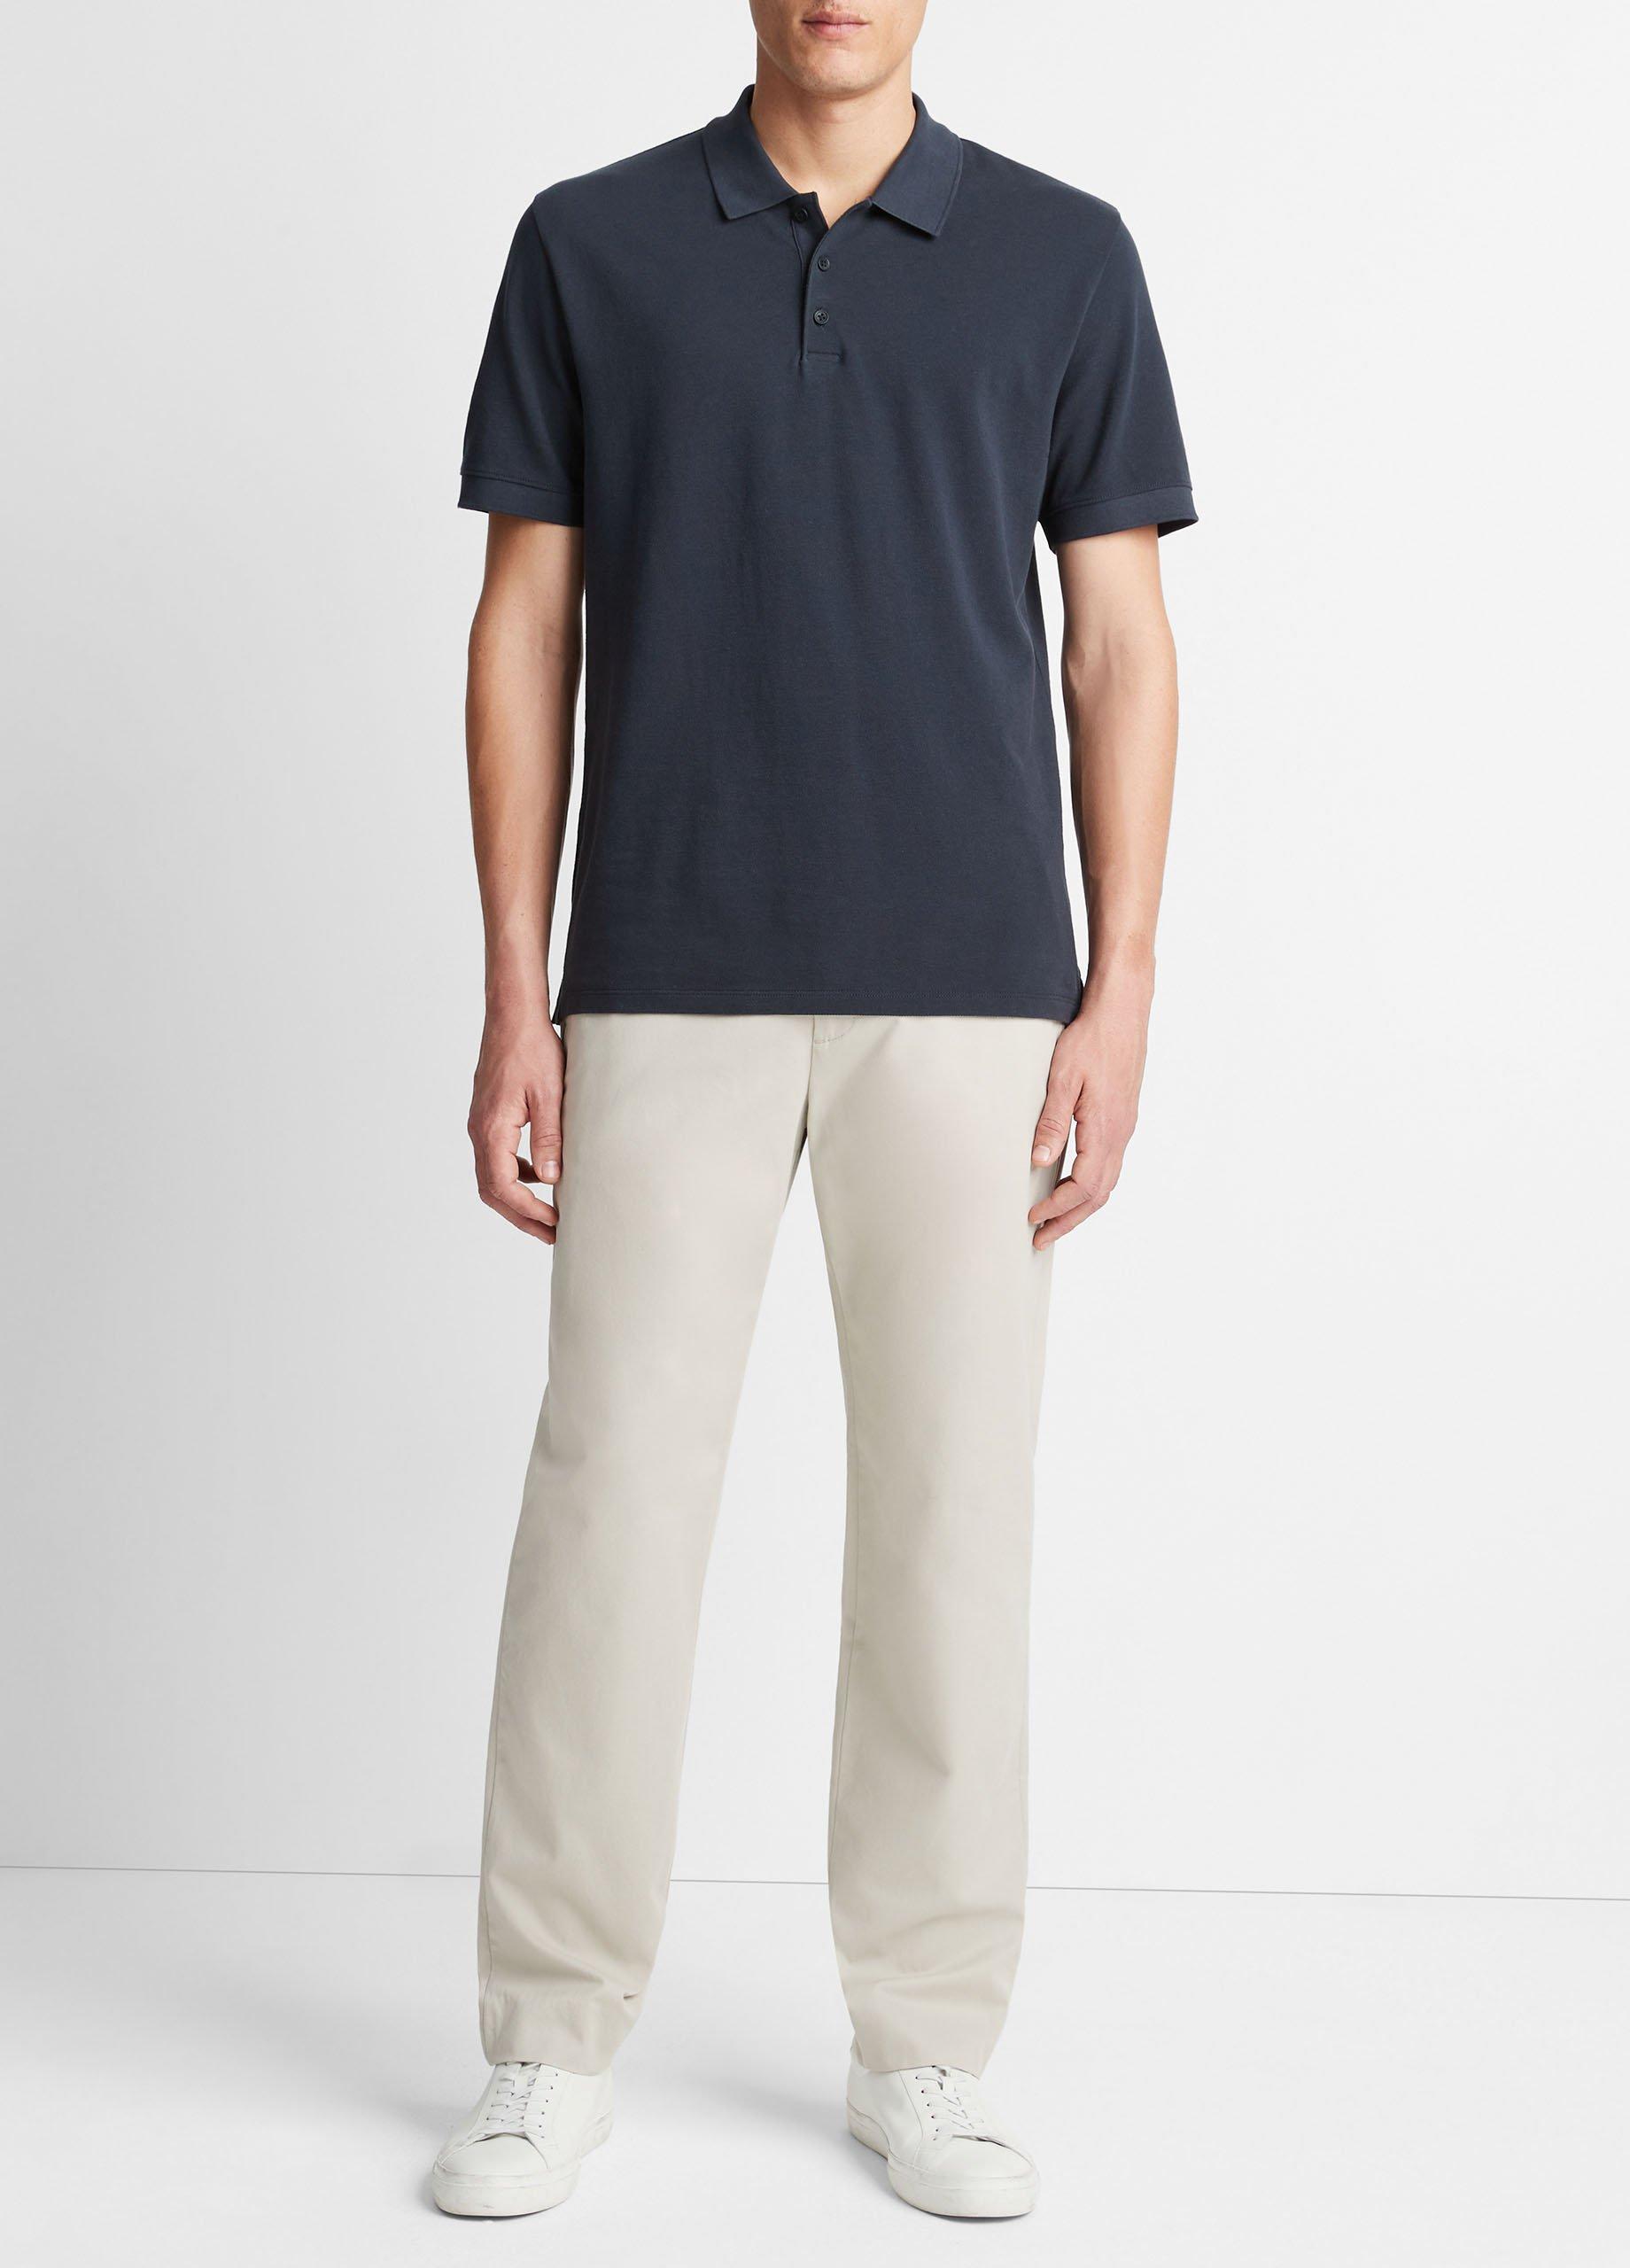 Cotton Piqué Polo Shirt, Coastal Blue, Size S Vince